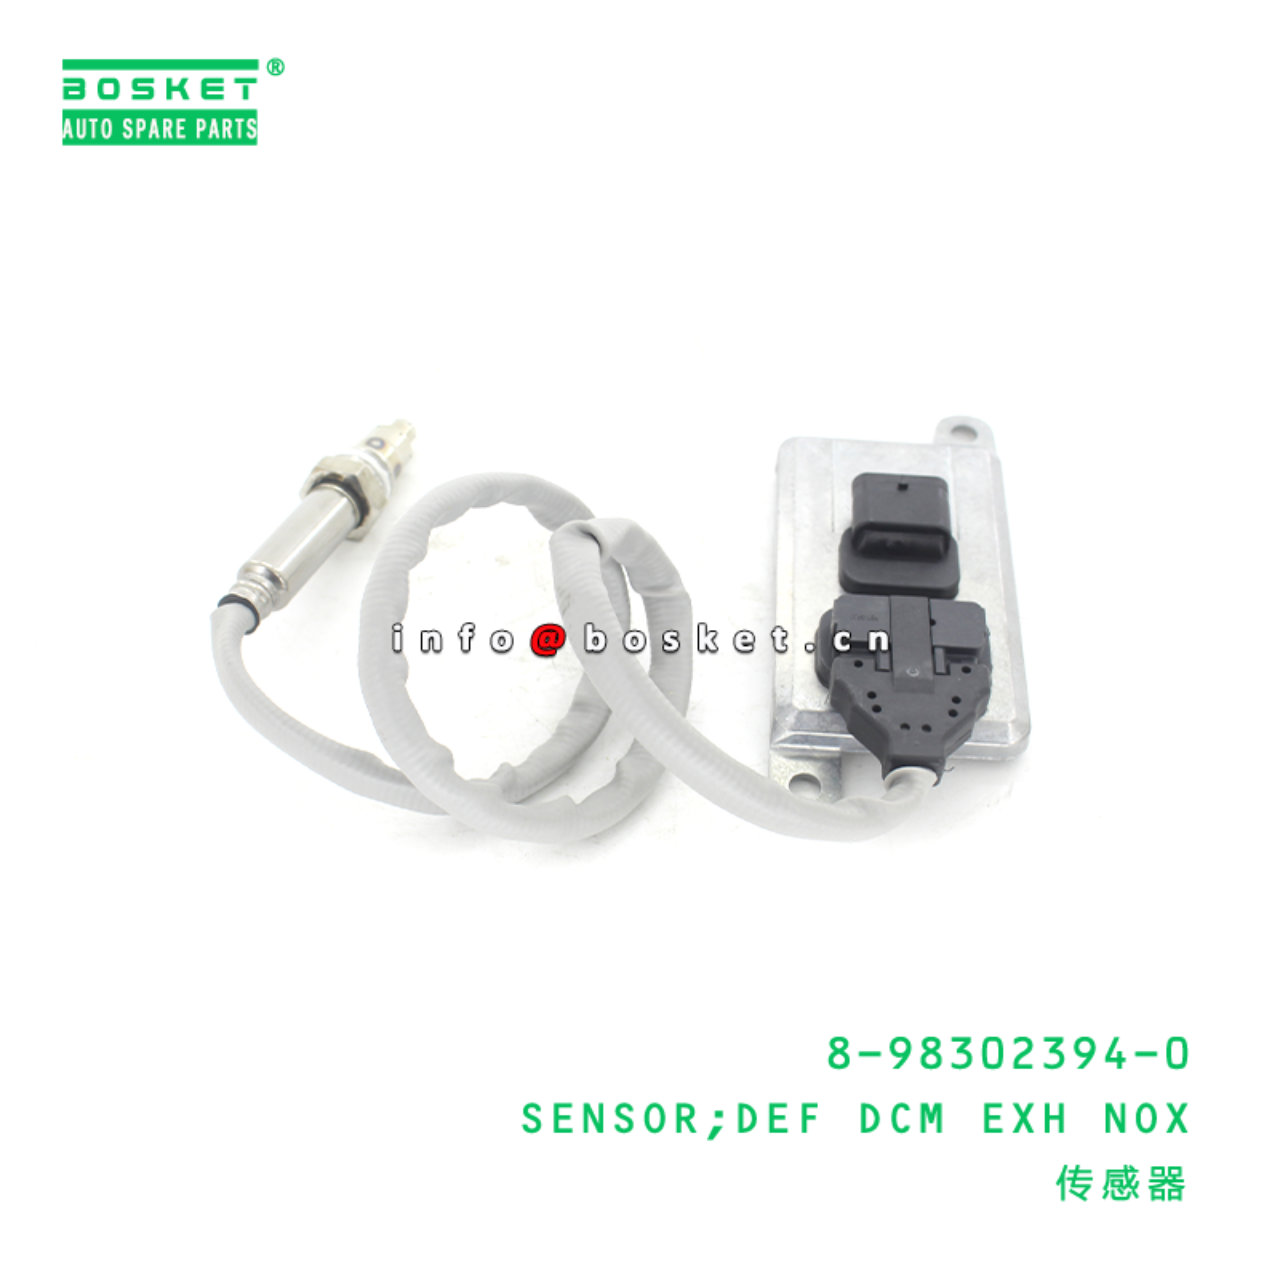 8-98302394-0 Def Dcm Exhaust Nox Sensor Suitable f...